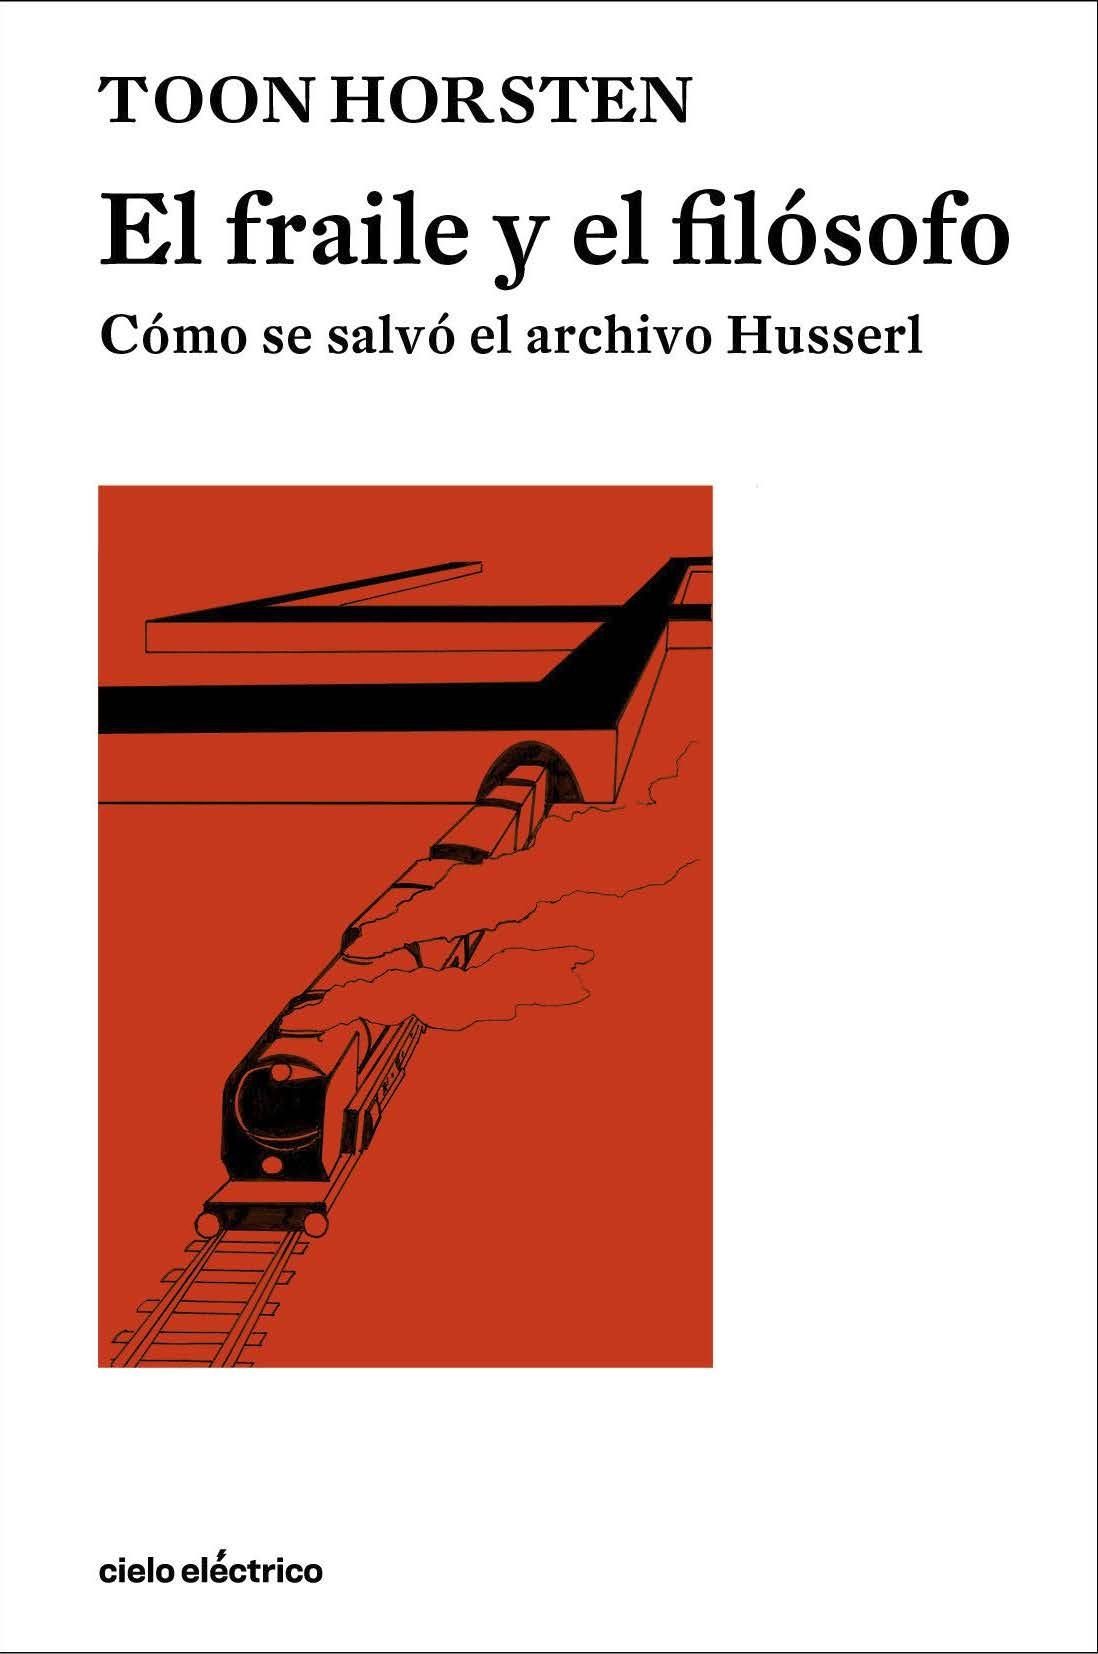 El fraile y el filósofo "Cómo se salvó el archivo Husserl"